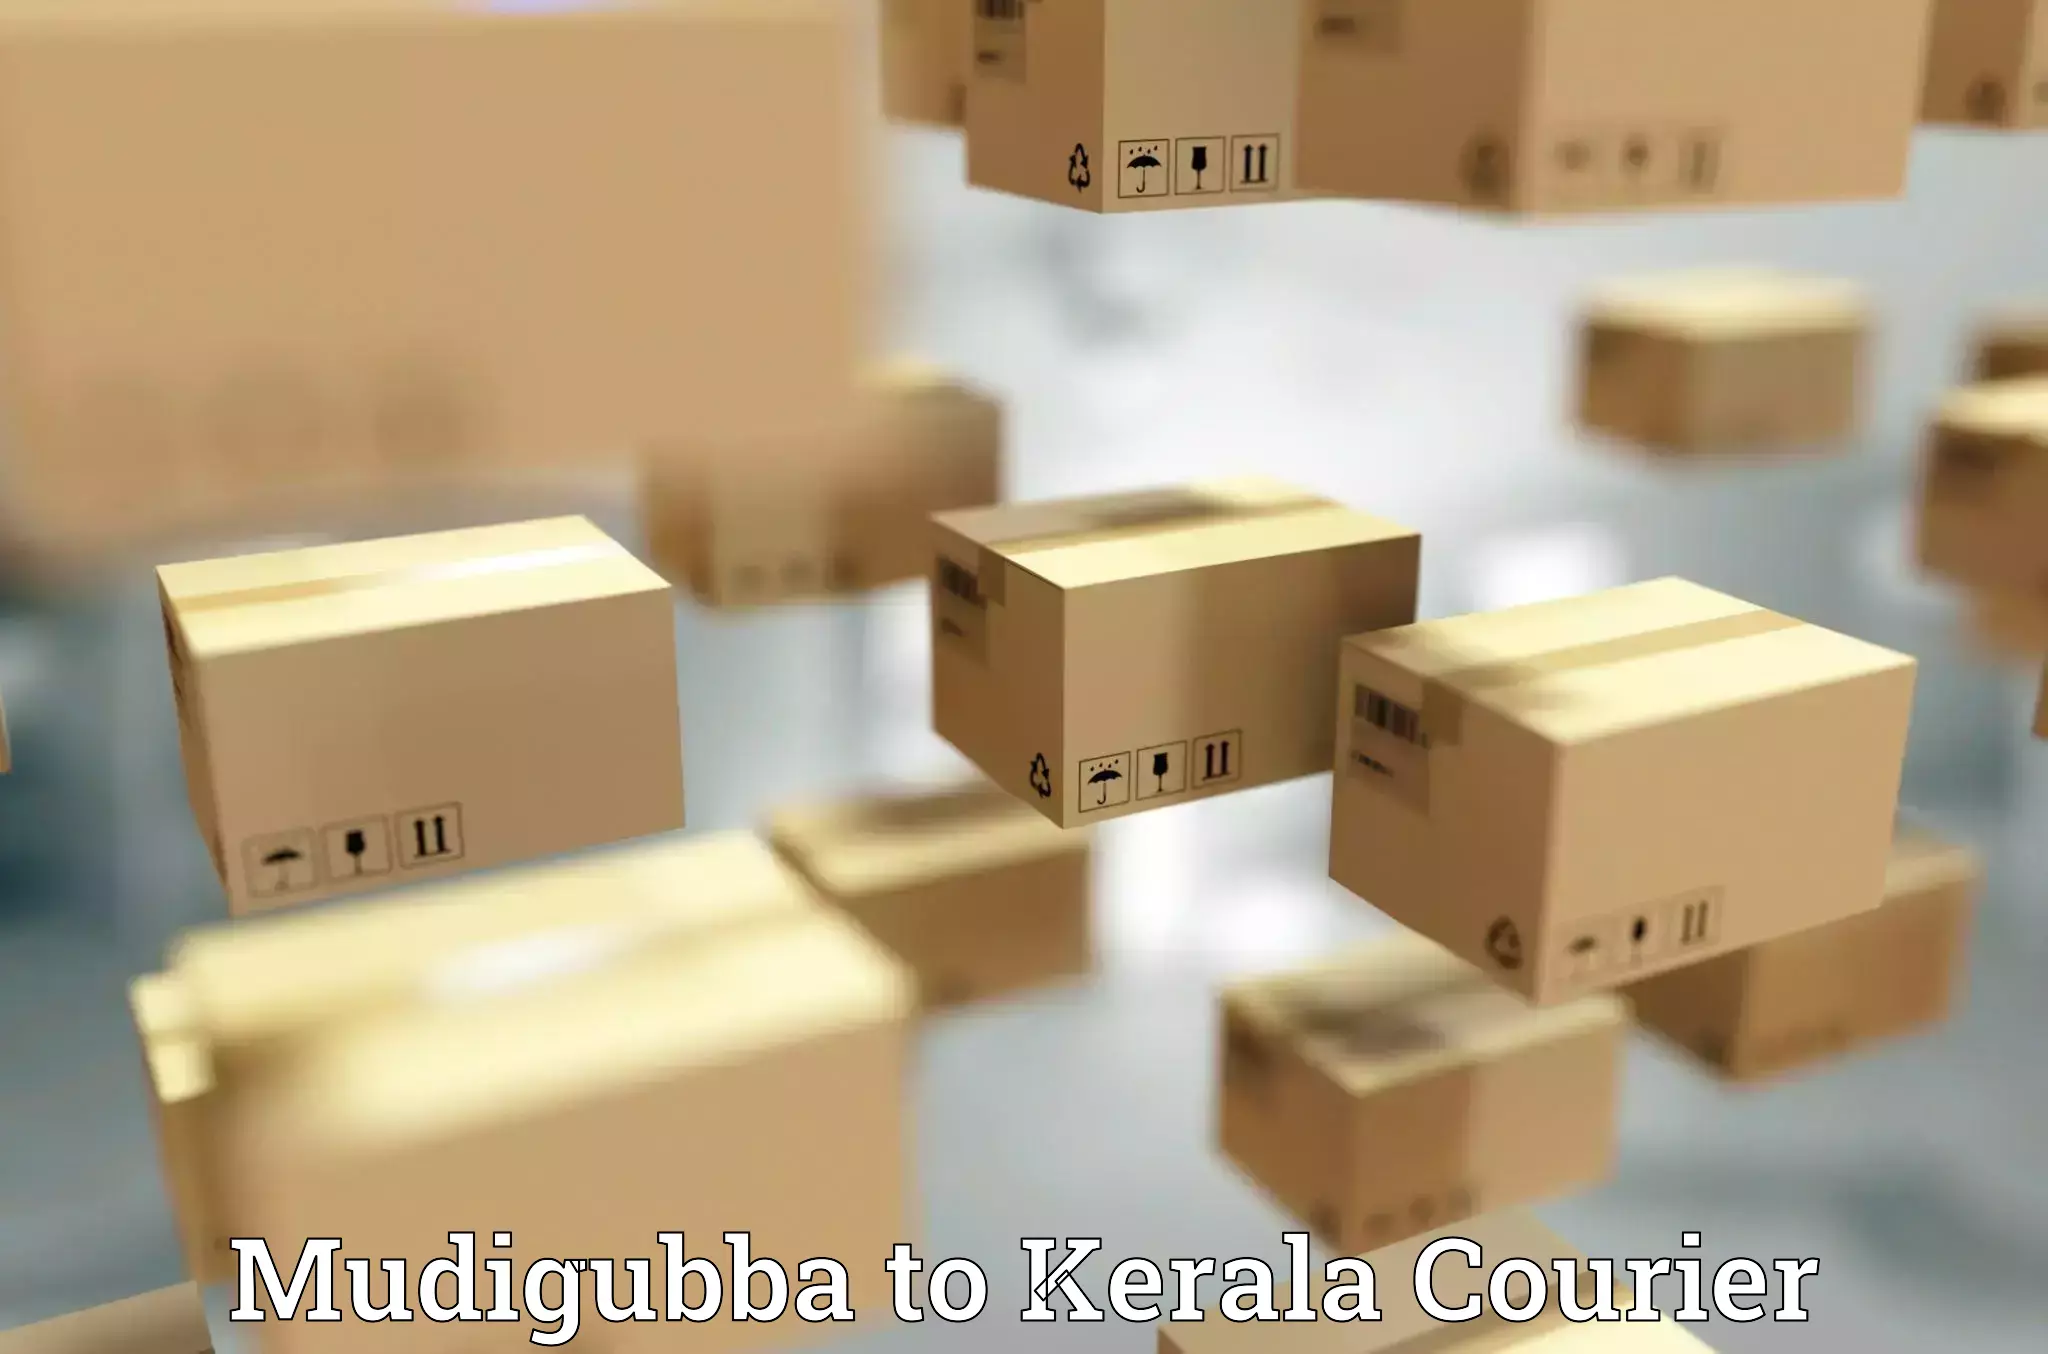 Personalized courier experiences Mudigubba to Neyyattinkara